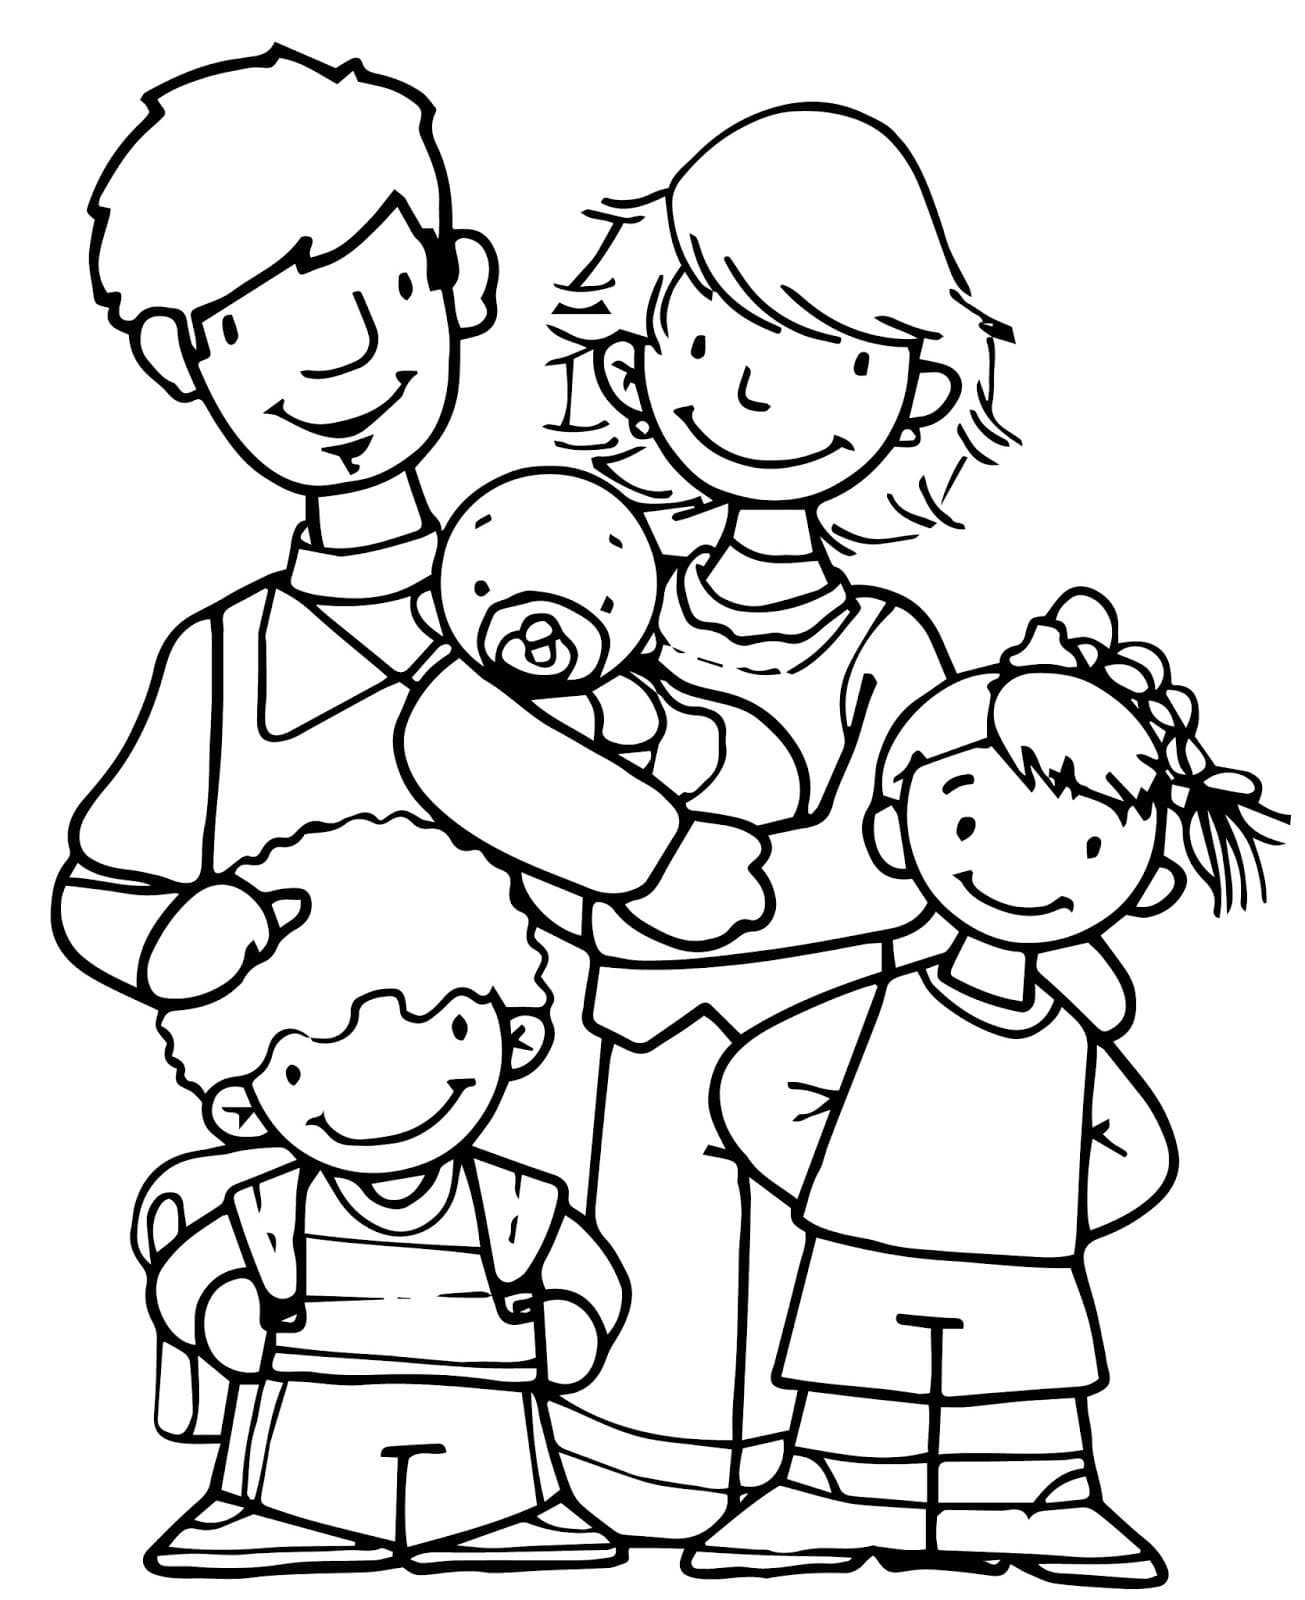 Раскраски Семья Раскраски про детей и родителей, бабушек и дедушек Раскраски про дружную и веселую семью, семейное дерево